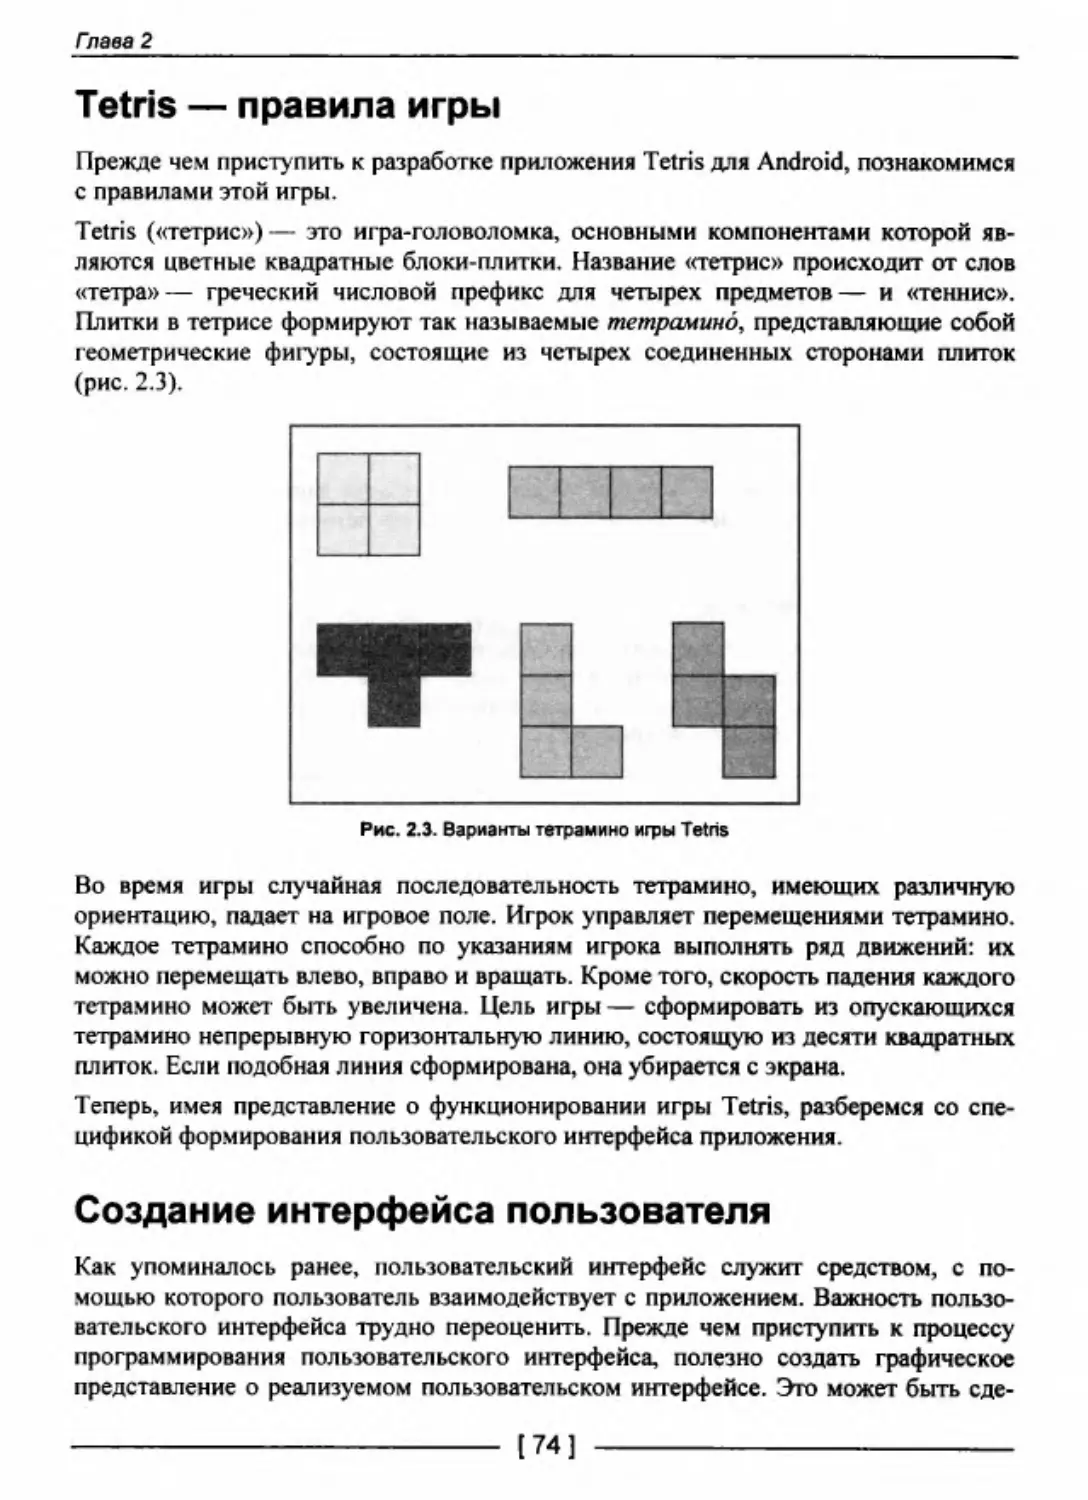 Tetris — правила игры
Создание интерфейса пользователя